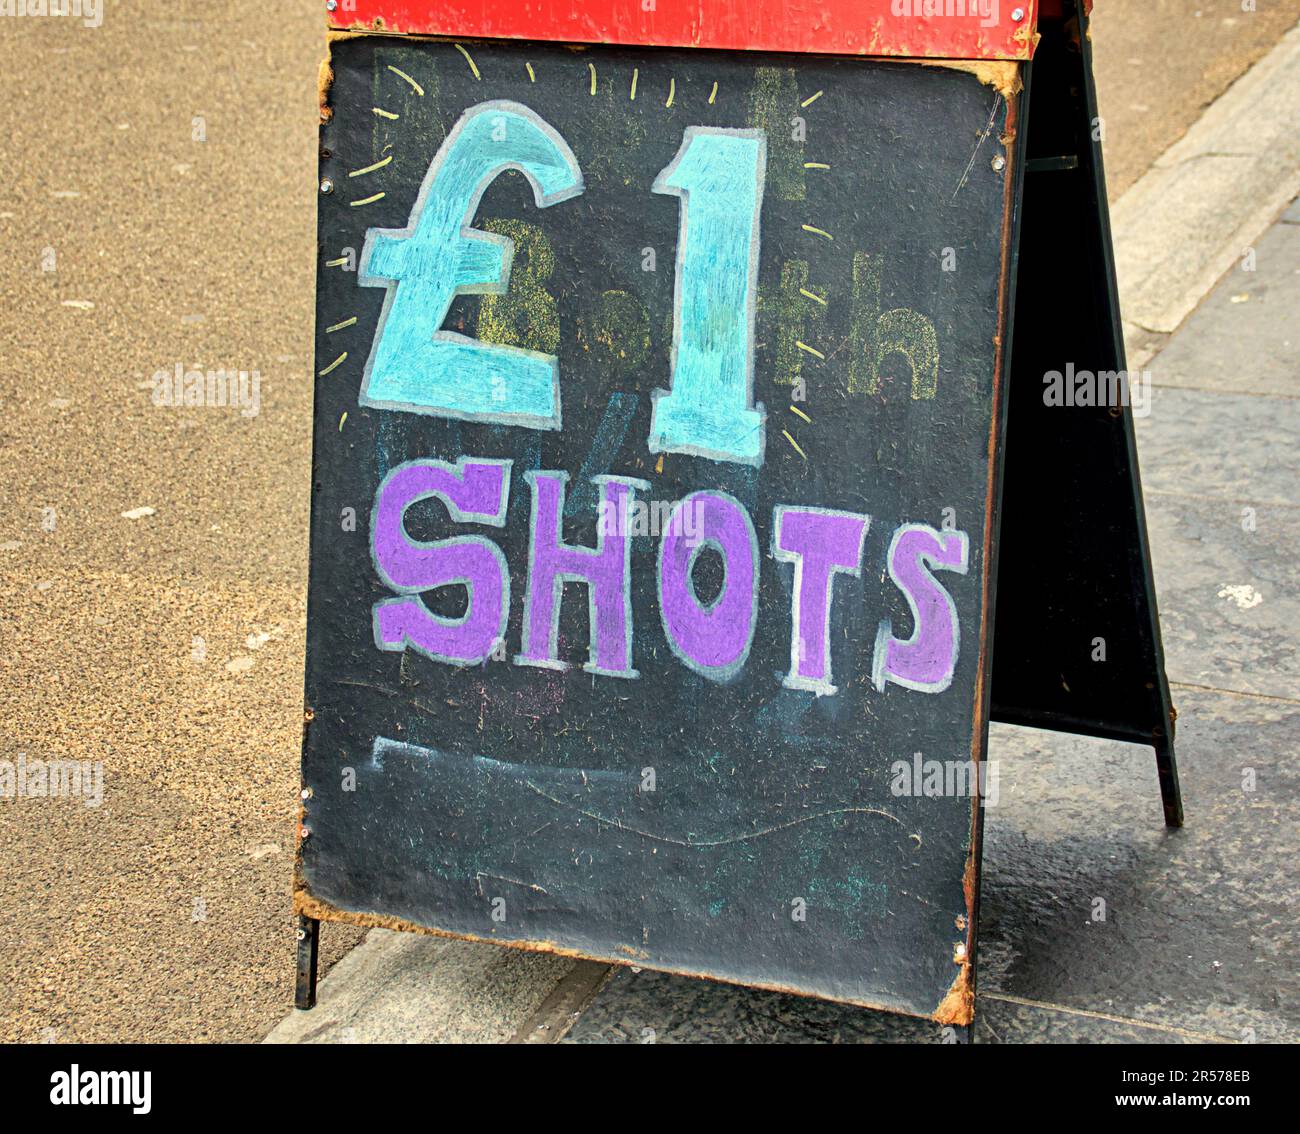 1 cartello da pub da un chilo di shot sul marciapiede Foto Stock